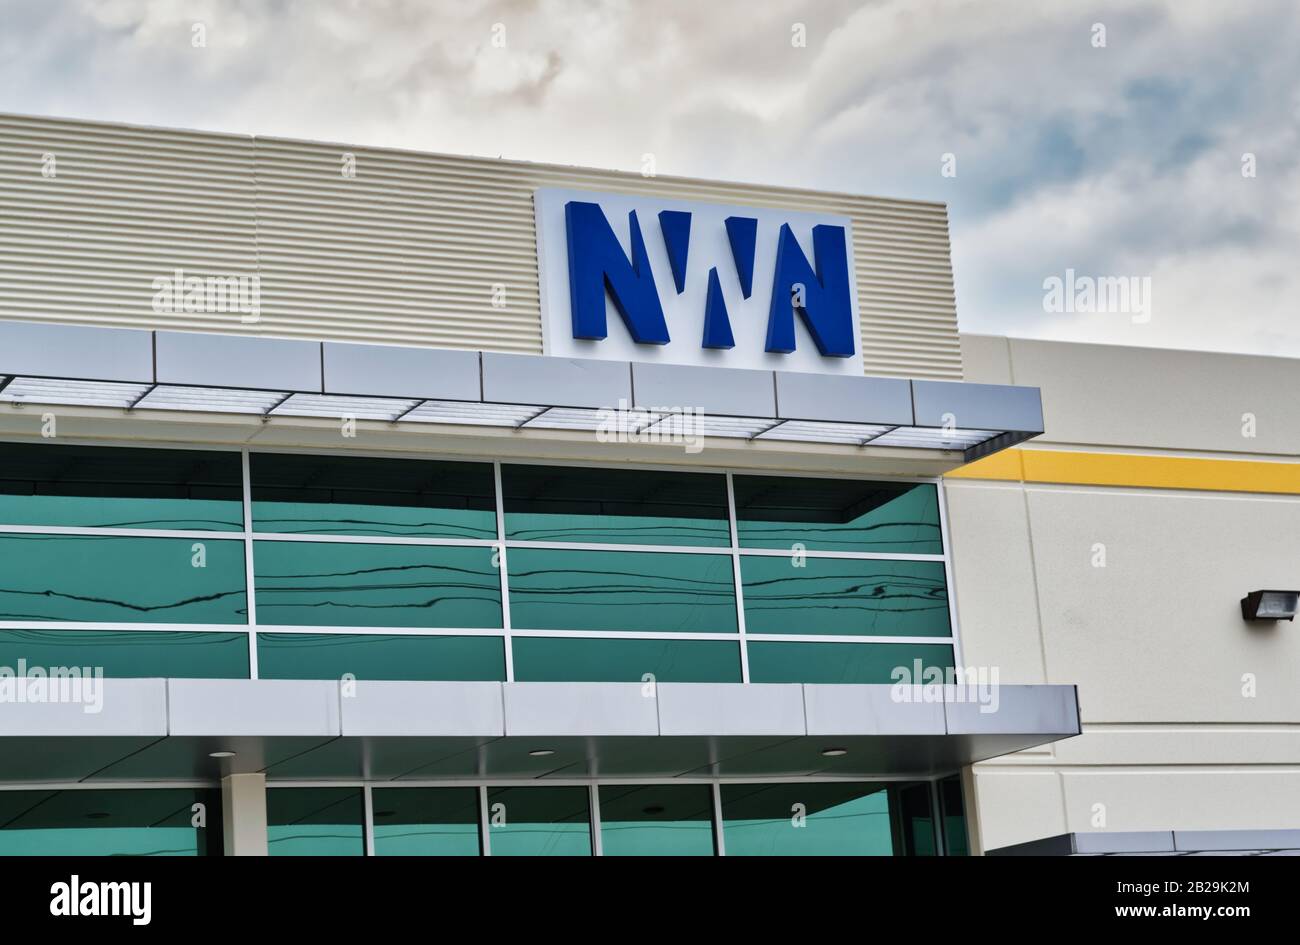 Extérieur de l'immeuble de bureaux de NWN Corporation à Houston, Texas. Société qui offre des solutions intégrées d'affaires technologiques pour les clients. Banque D'Images